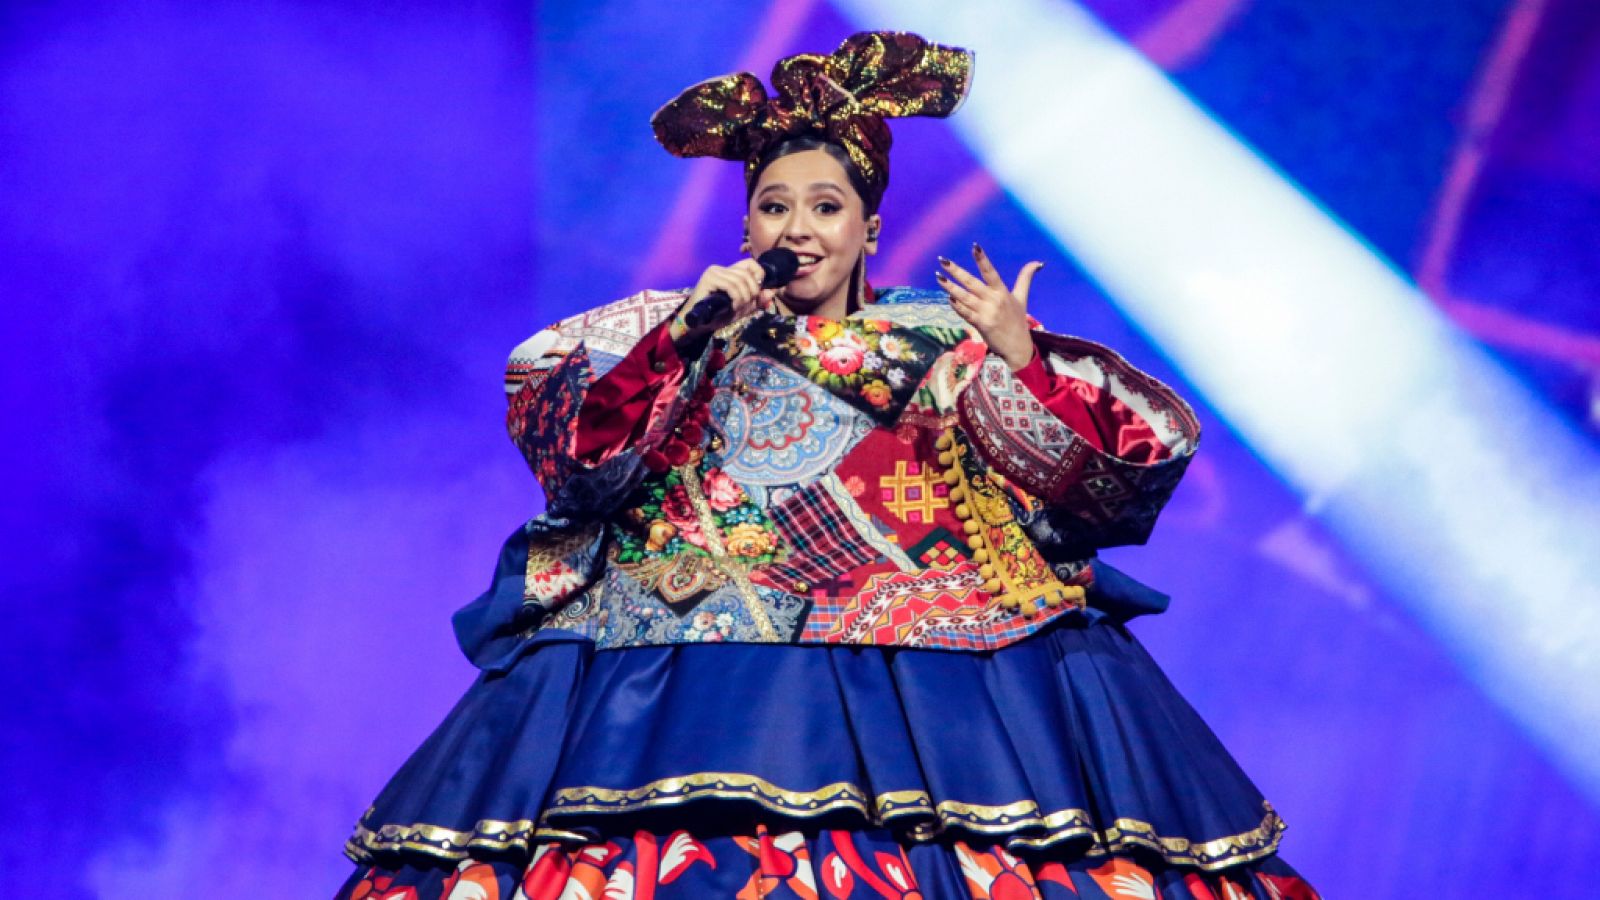 Eurovisión 2021 - Rusia: Manizha canta "Russian woman"